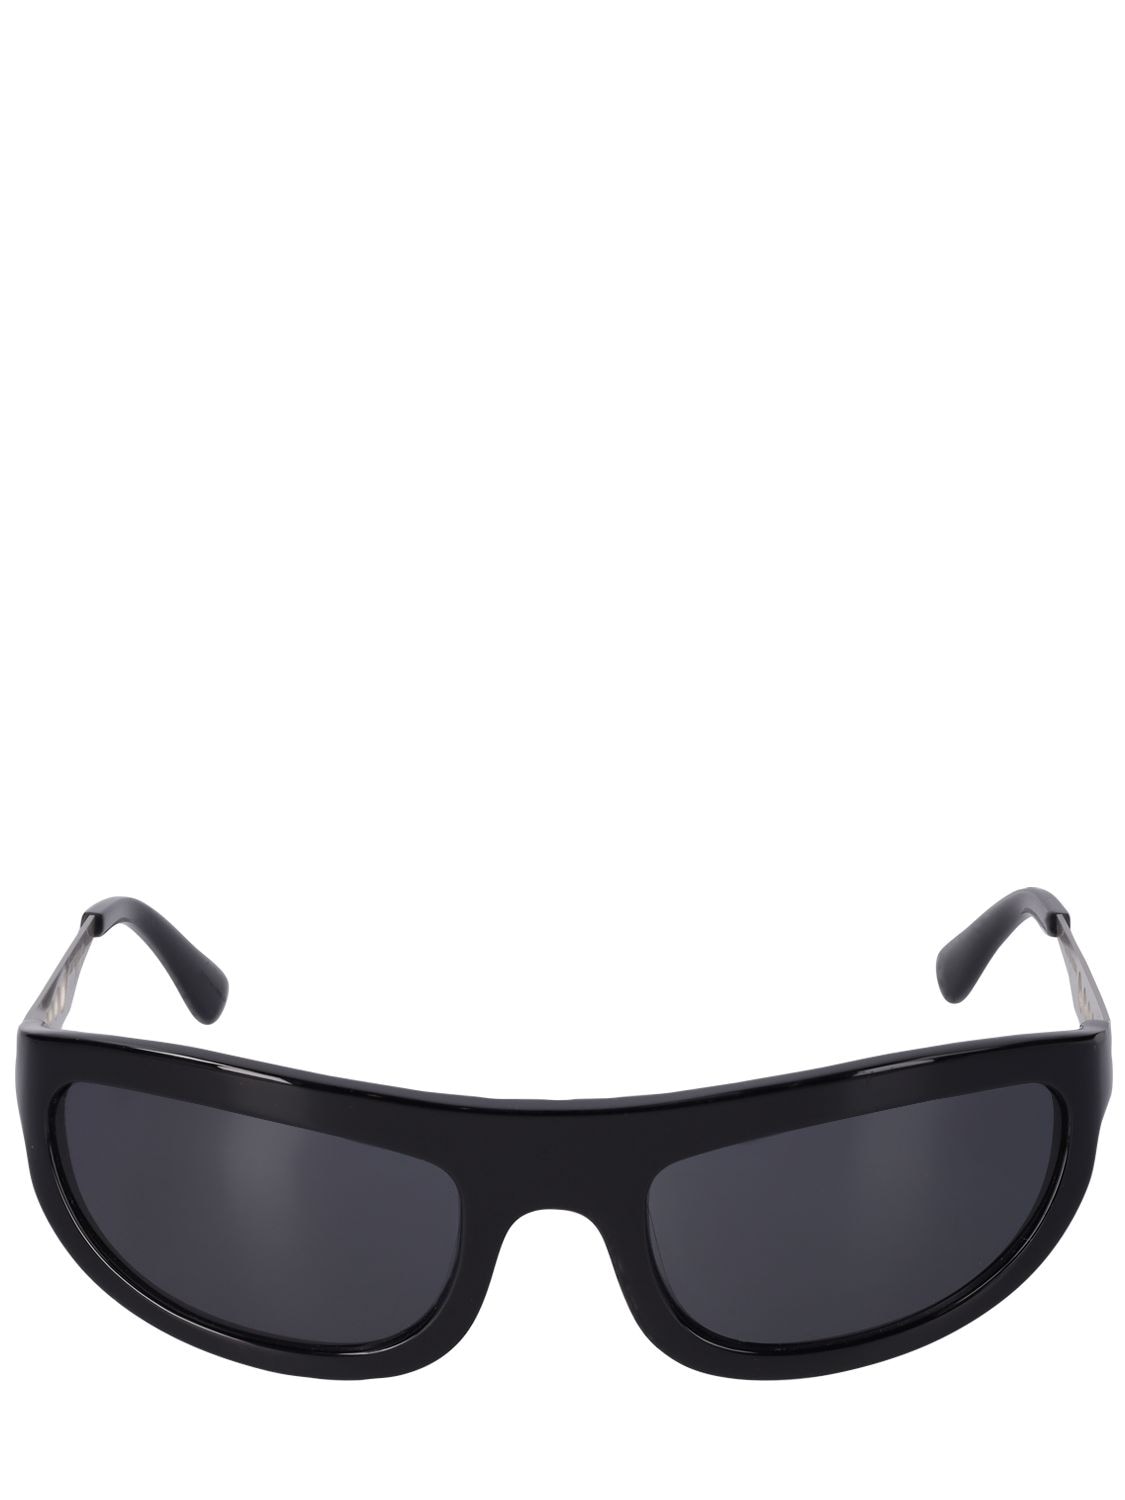 Corten Black Steel Sunglasses - A BETTER FEELING - Modalova